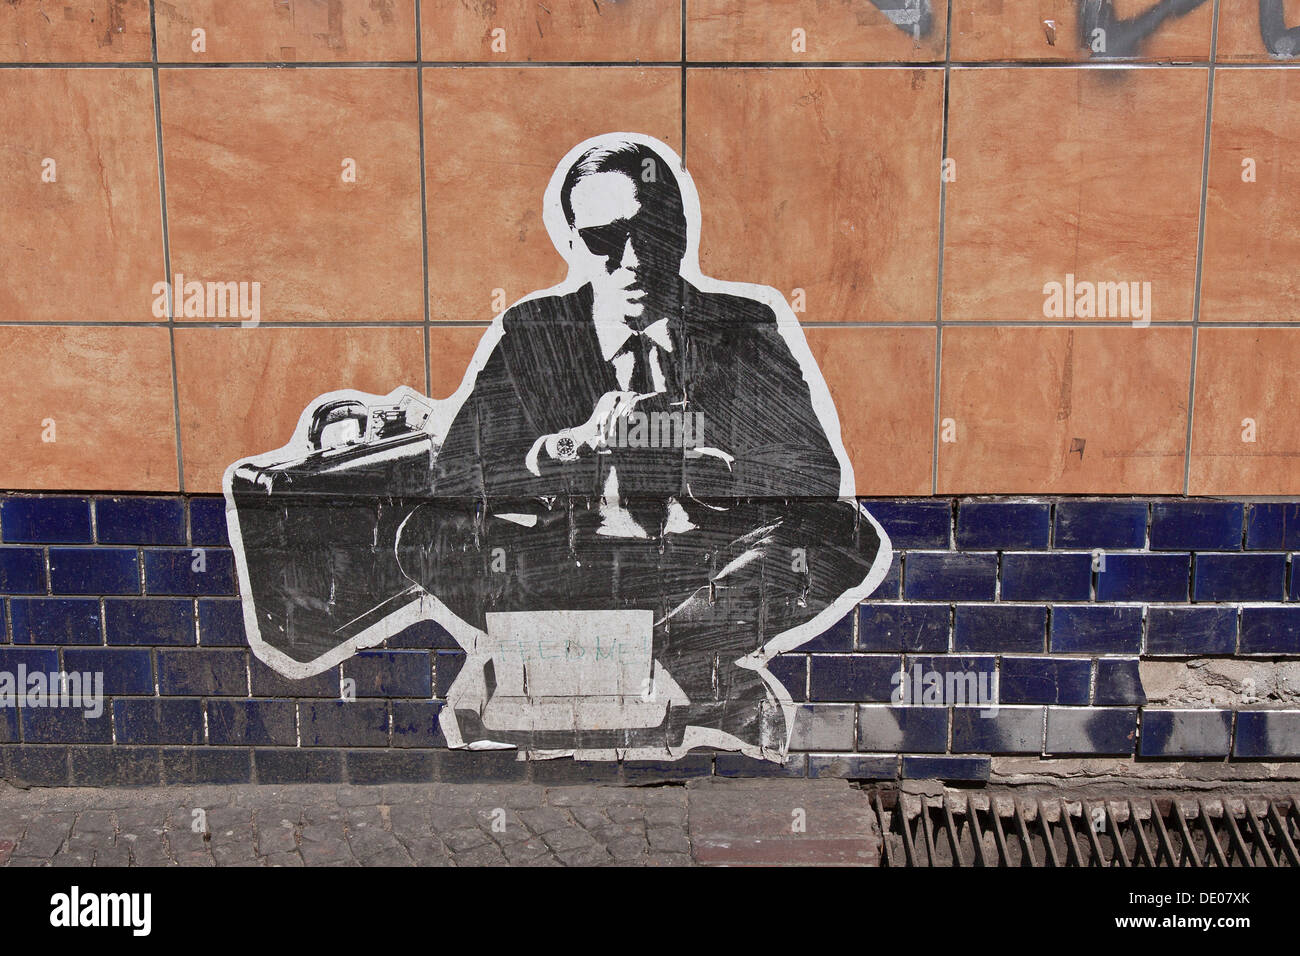 Hombre vestido con un traje, banquero o empresario con un maletín, un cartel pegado en una pared, Berlín Foto de stock